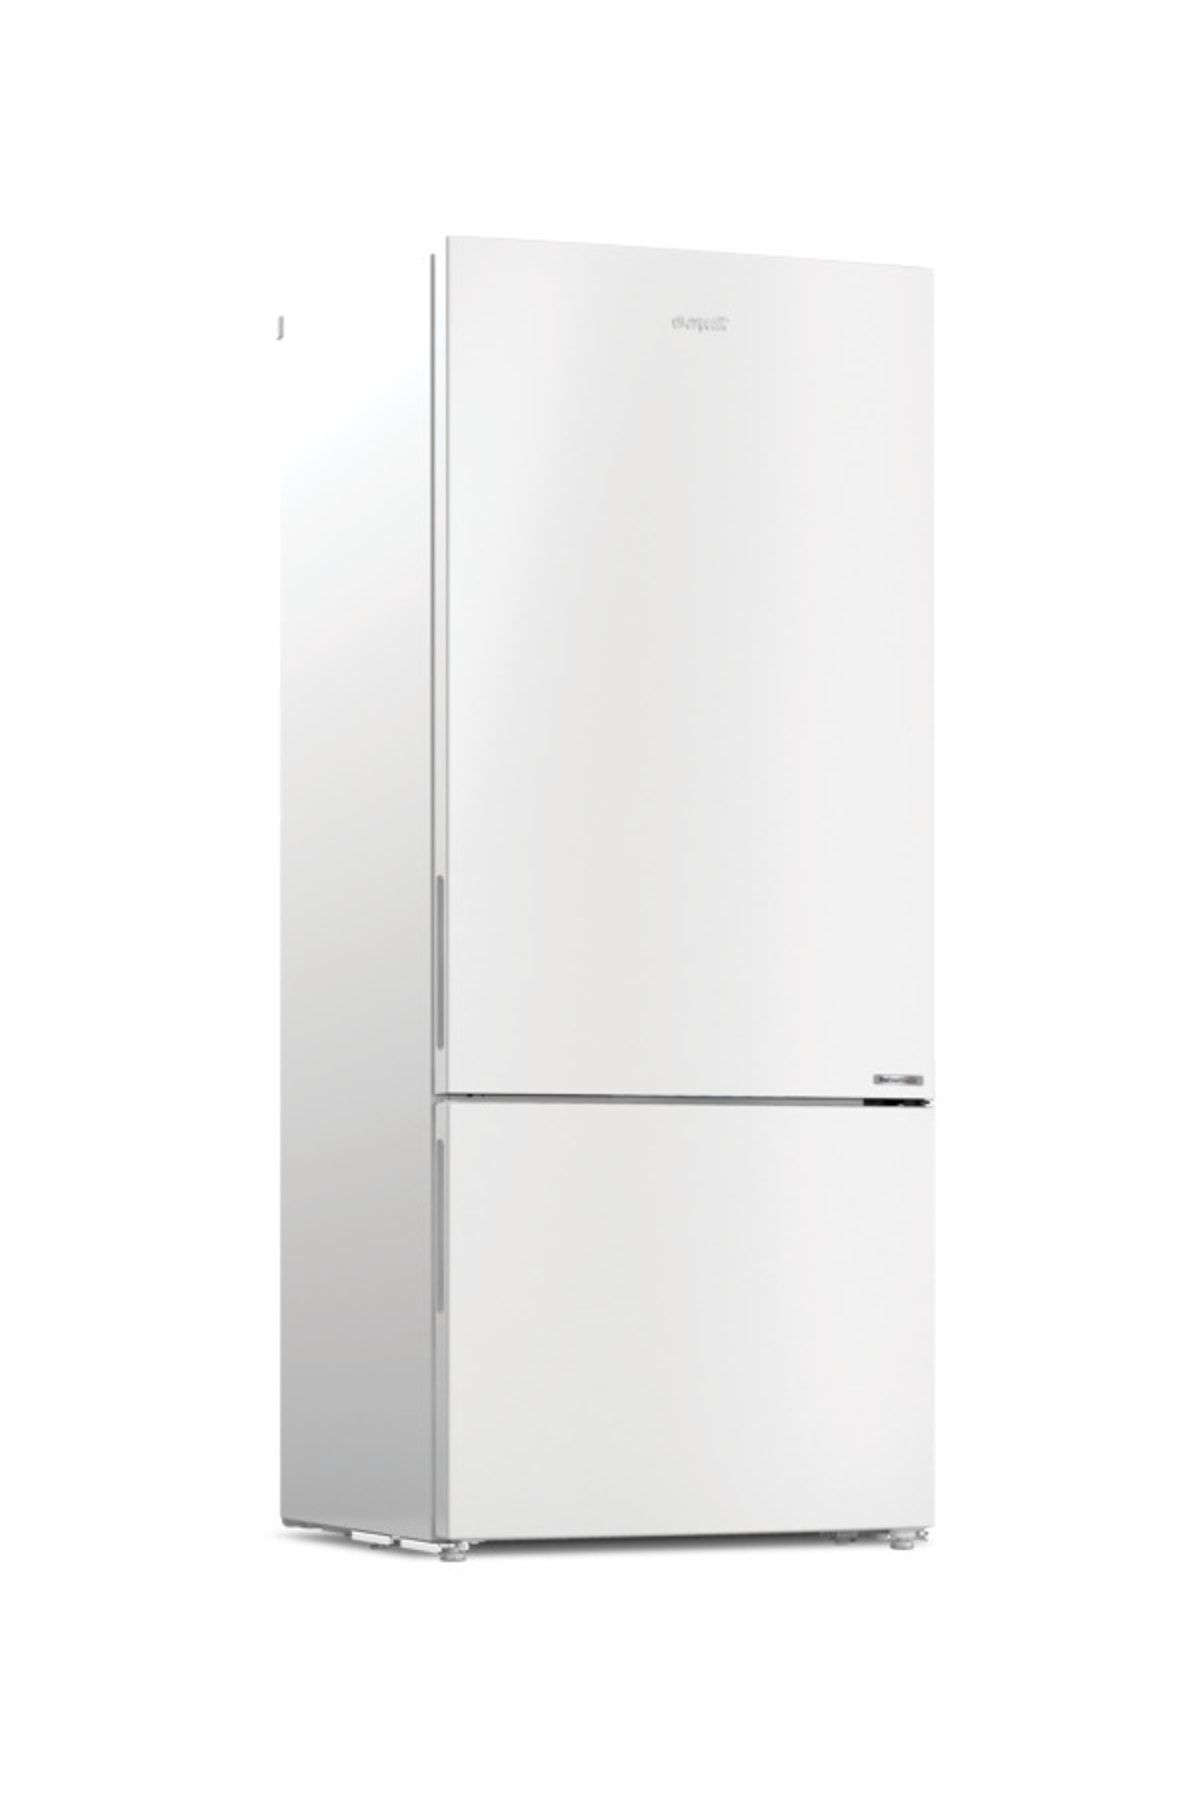 Arçelik No Frost Buzdolabı, 532 L, Vitaminzone Teknolojisi, Beyaz Renk, 274532 Mb 321547852888